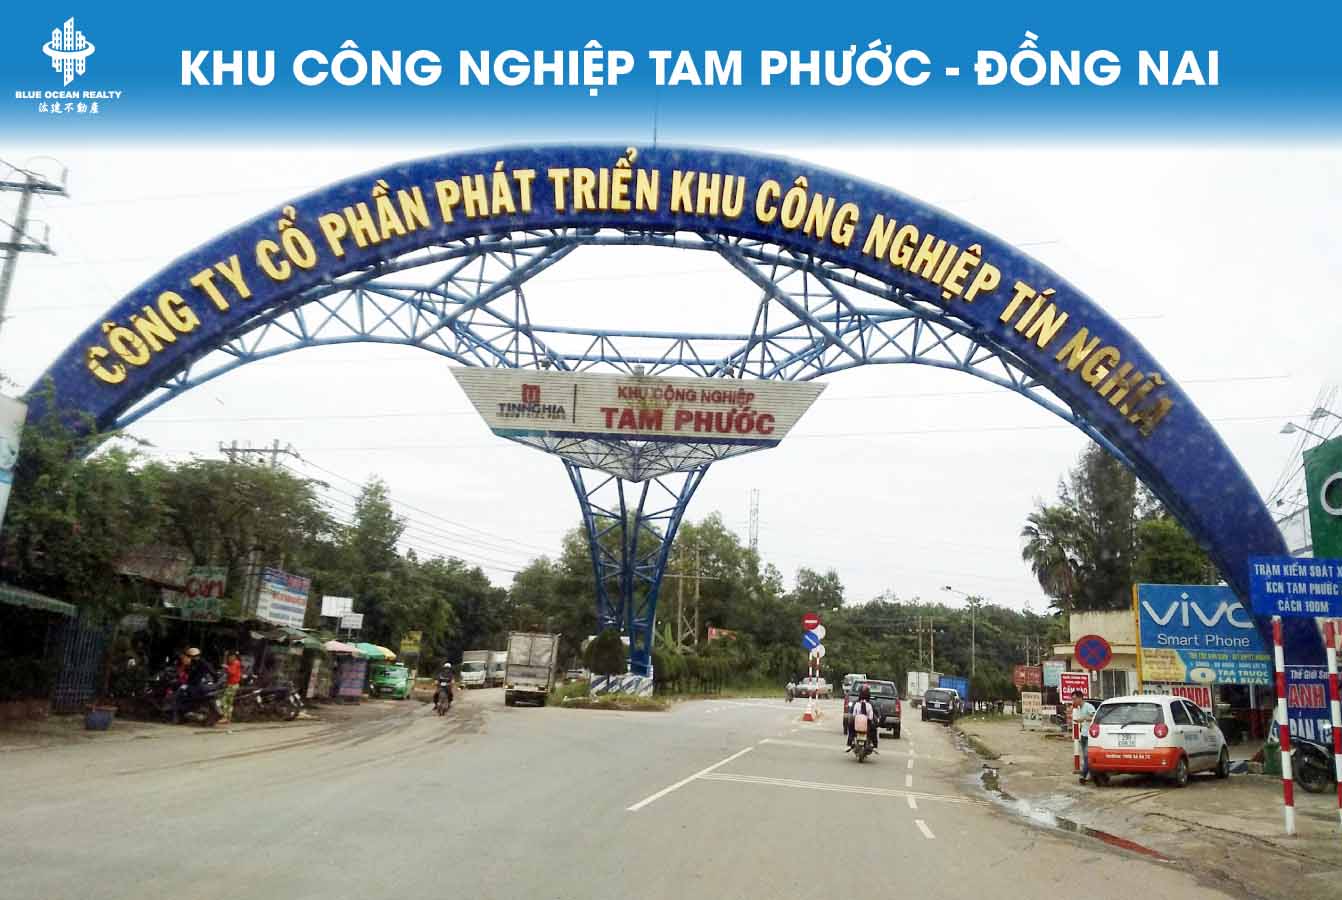 Khu công nghiệp Tam Phước - Đồng Nai